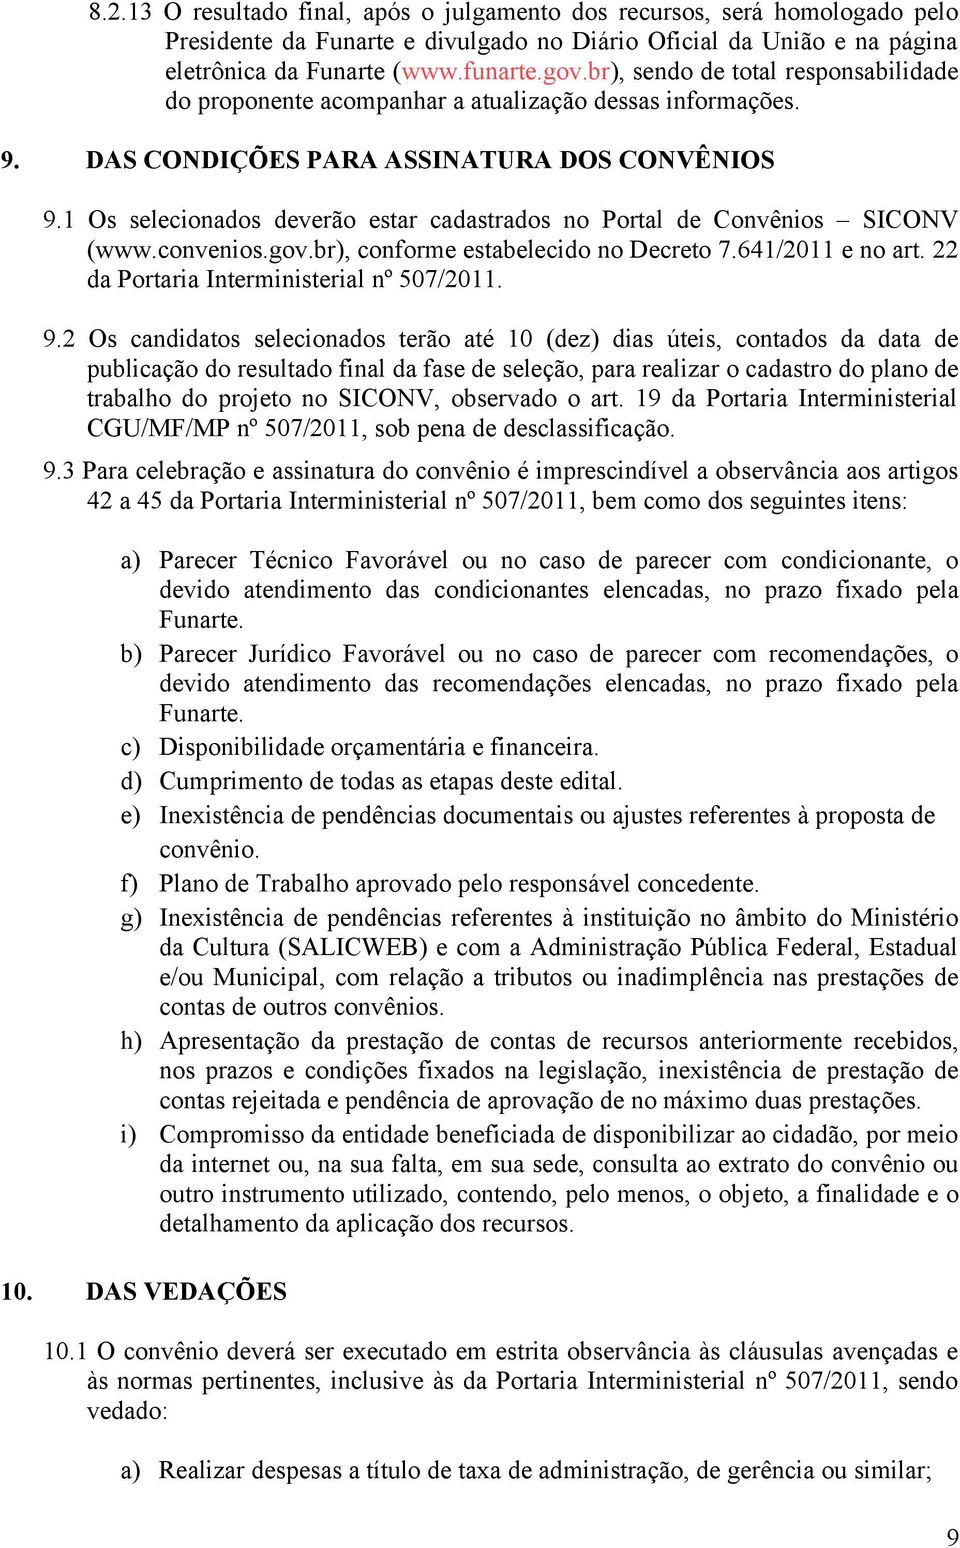 1 Os selecionados deverão estar cadastrados no Portal de Convênios SICONV (www.convenios.gov.br), conforme estabelecido no Decreto 7.641/2011 e no art. 22 da Portaria Interministerial nº 507/2011. 9.